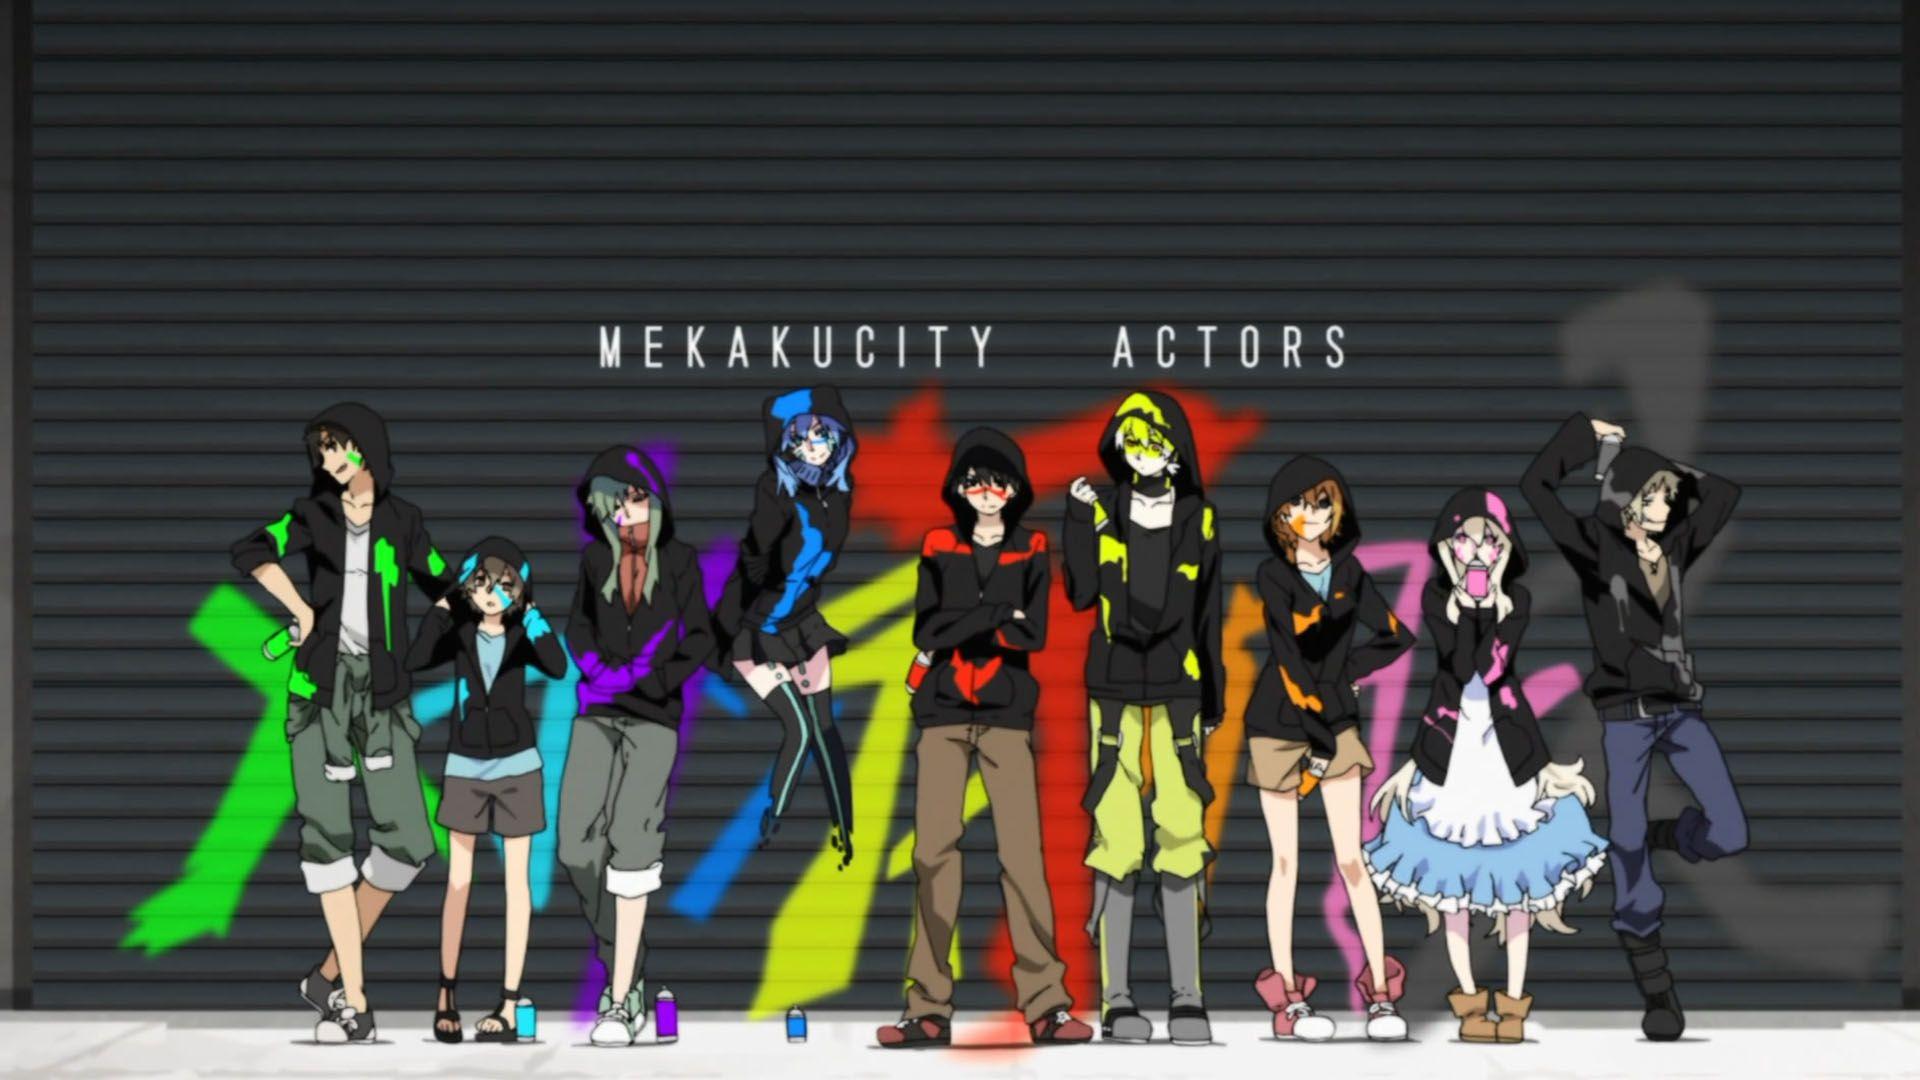 Mekakucity Actors (2014) • Reviews, film + cast • Letterboxd